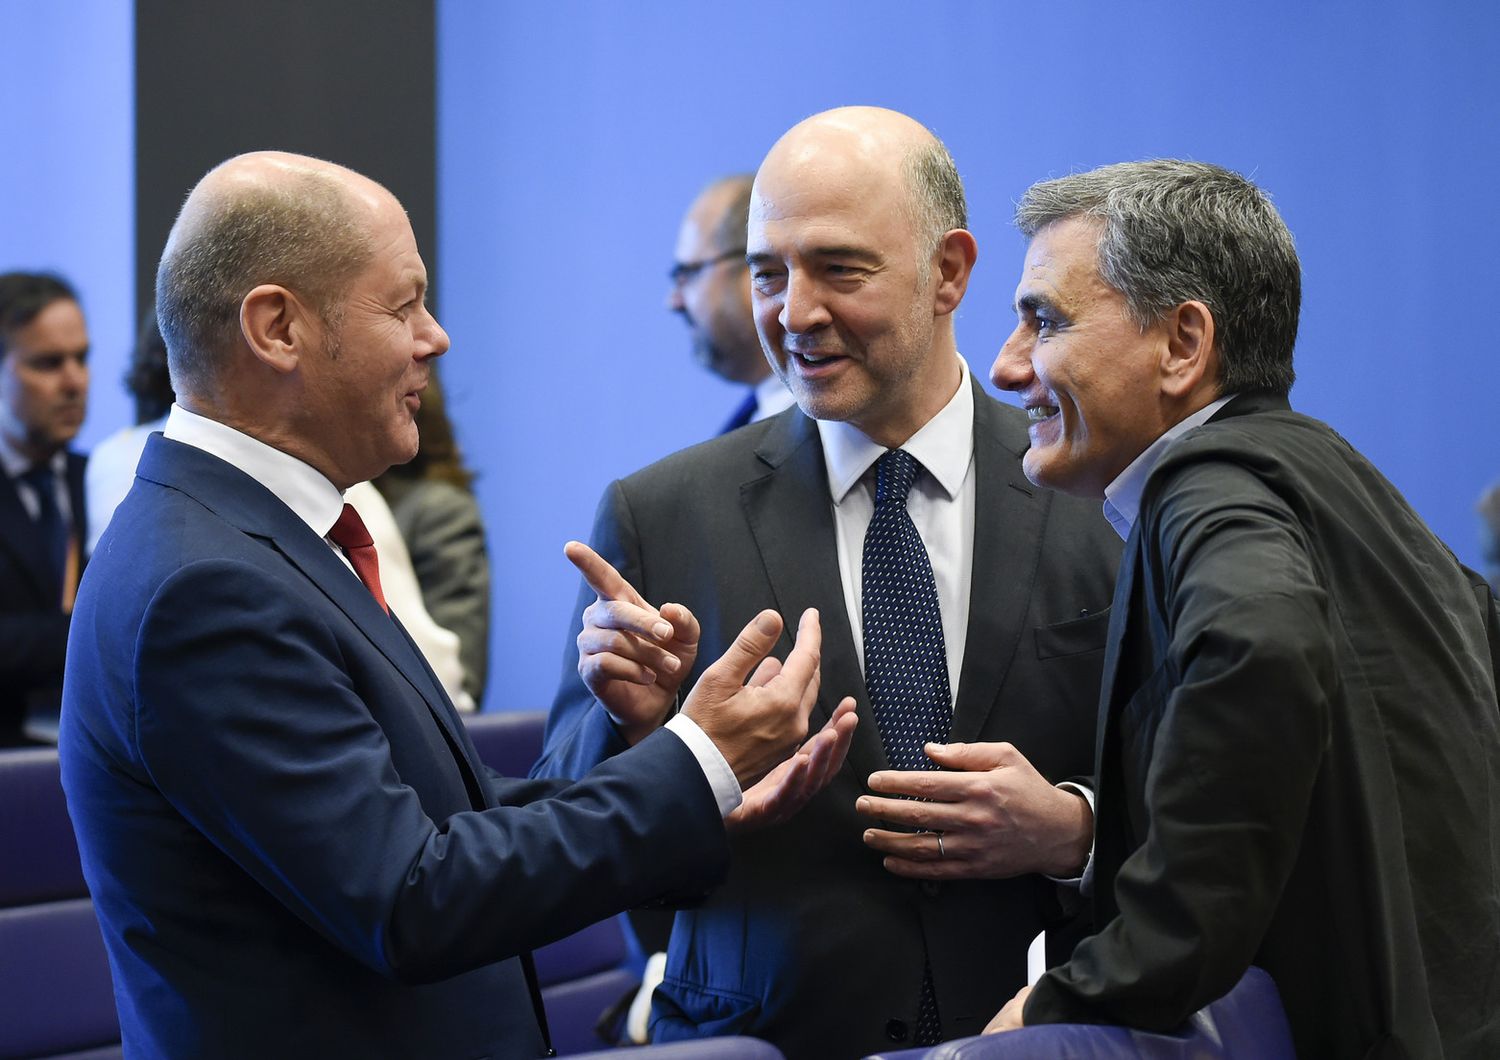 Il ministro delle finanze tedesco Olaf Scholz parla con il commissario europeo per gli Affari economici Pierre Moscovici e il ministro delle Finanze greco Euclid Tsakalotos durante una riunione dell'Eurogruppo al castello di Senningen in Lussemburgo&nbsp;